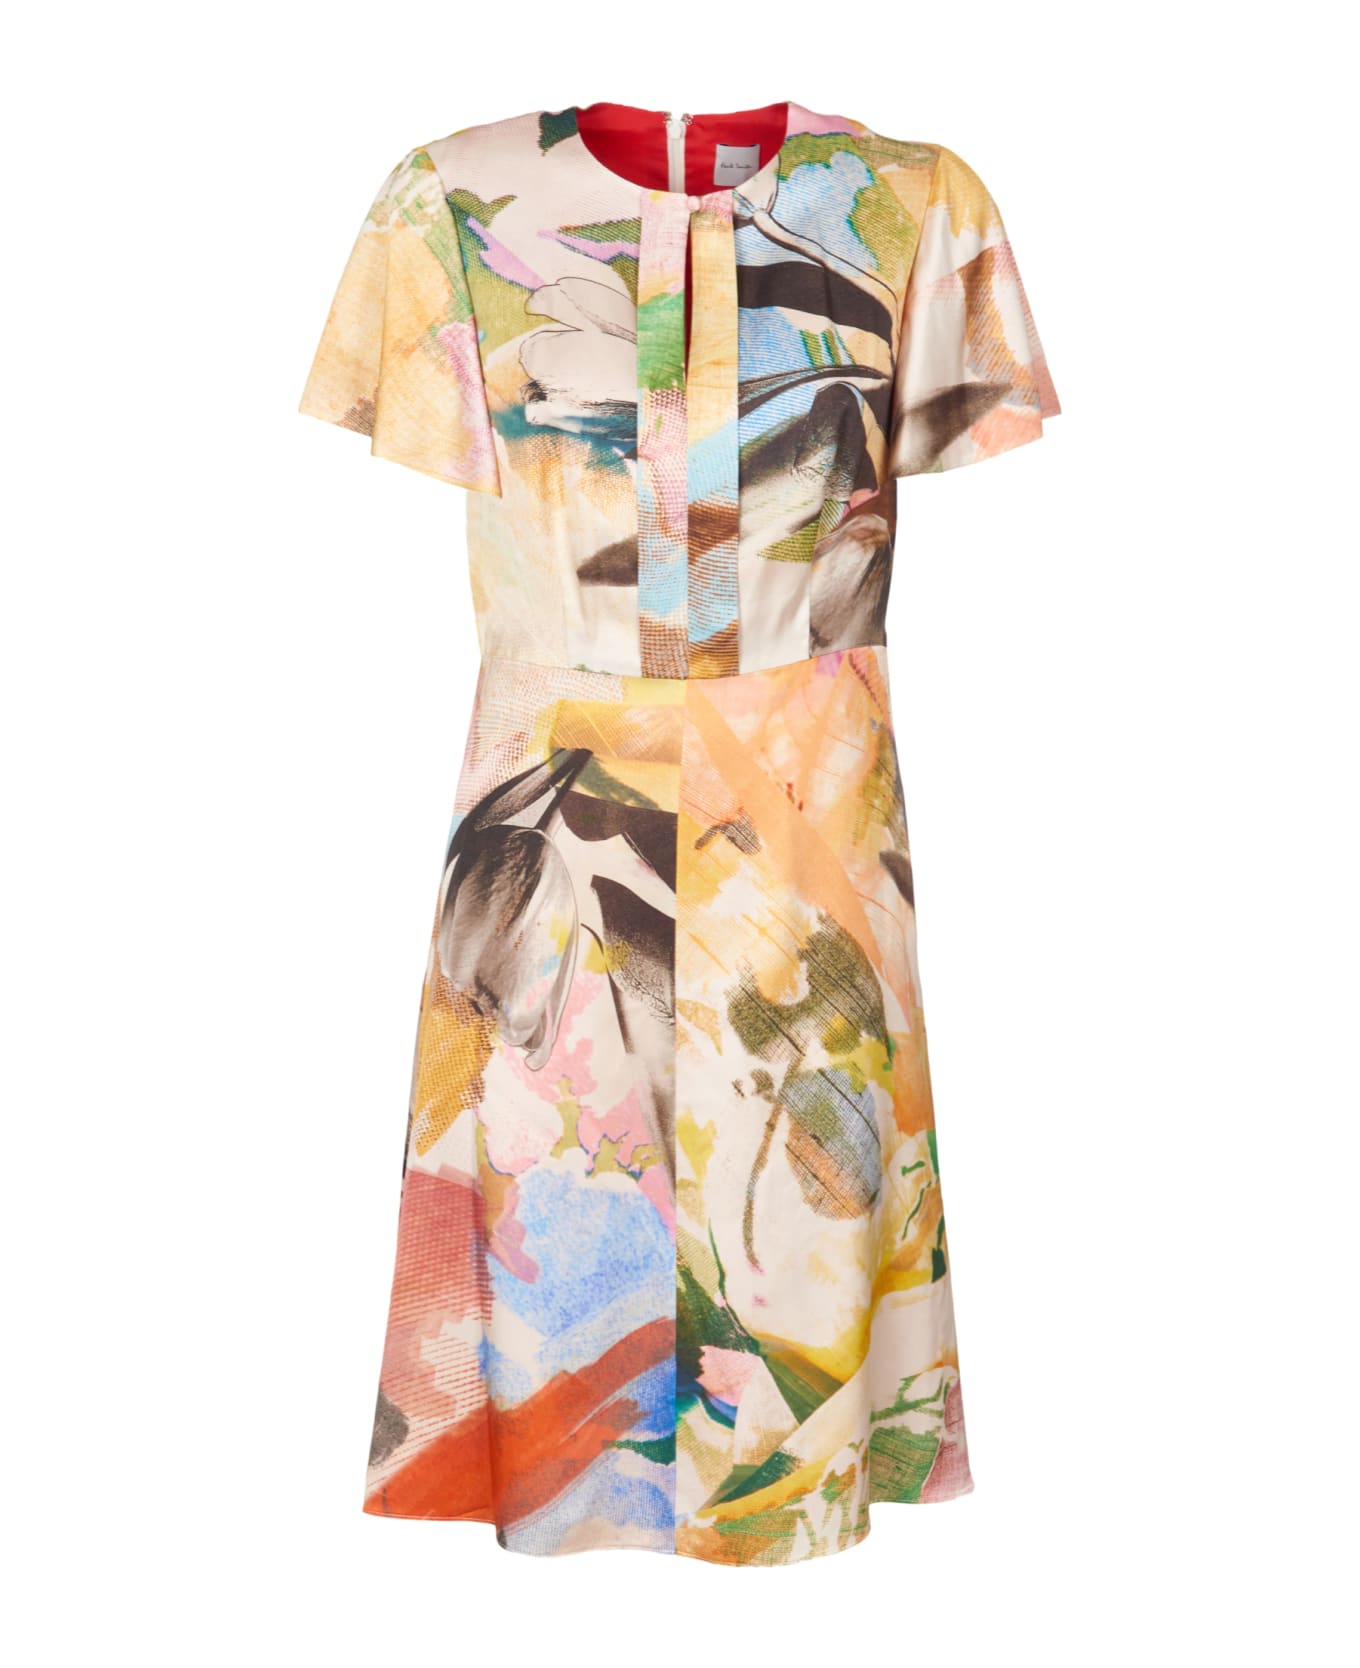 Paul Smith Dress - Multicolor